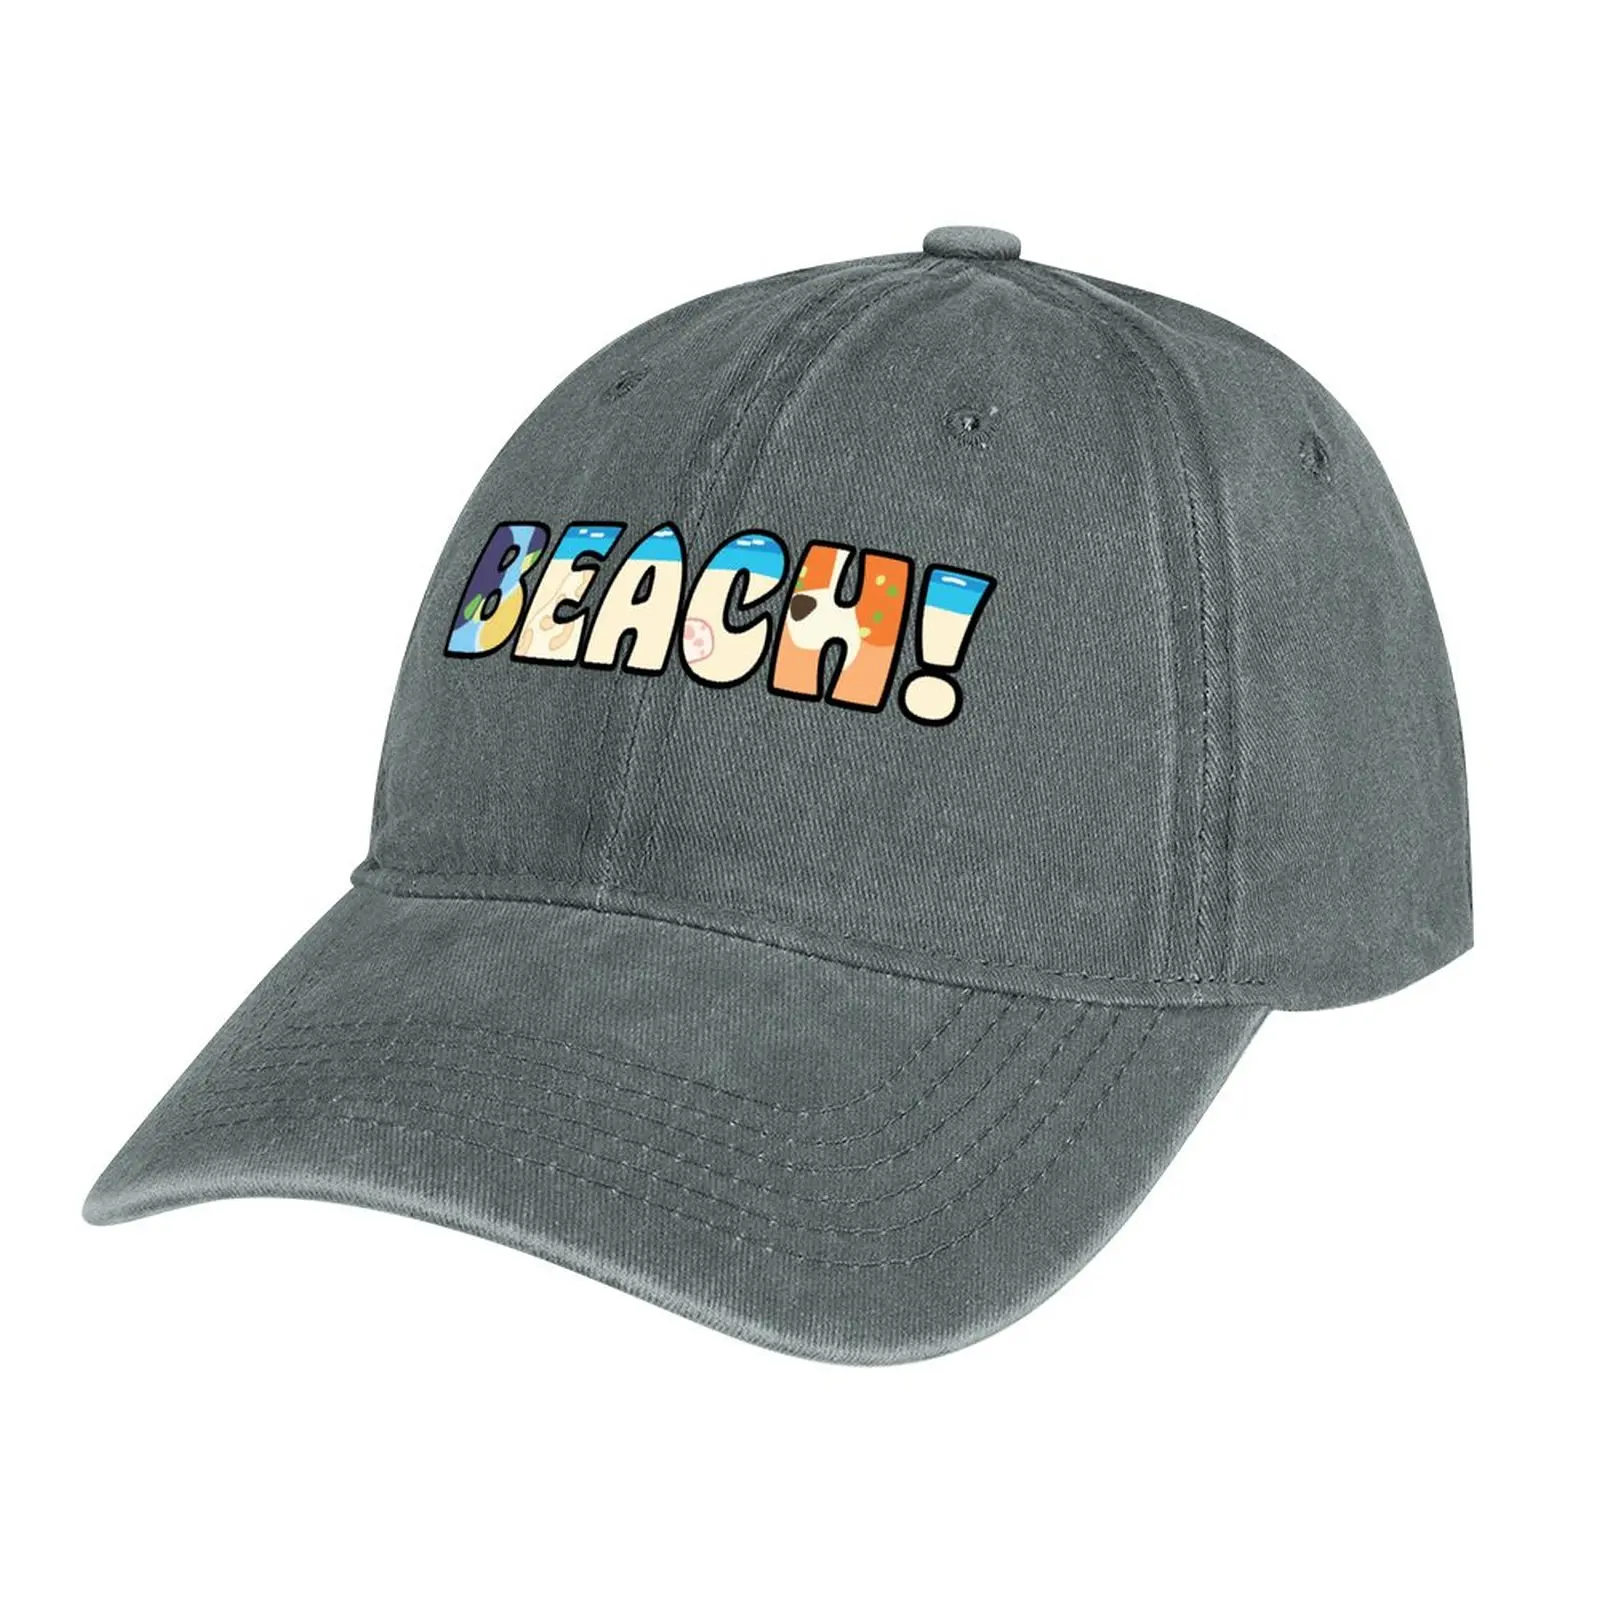 ПЛЯЖ! Ковбойская шляпа модные пенопластовые шляпы для вечеринок, пляжная сумка, женские шляпы, мужские